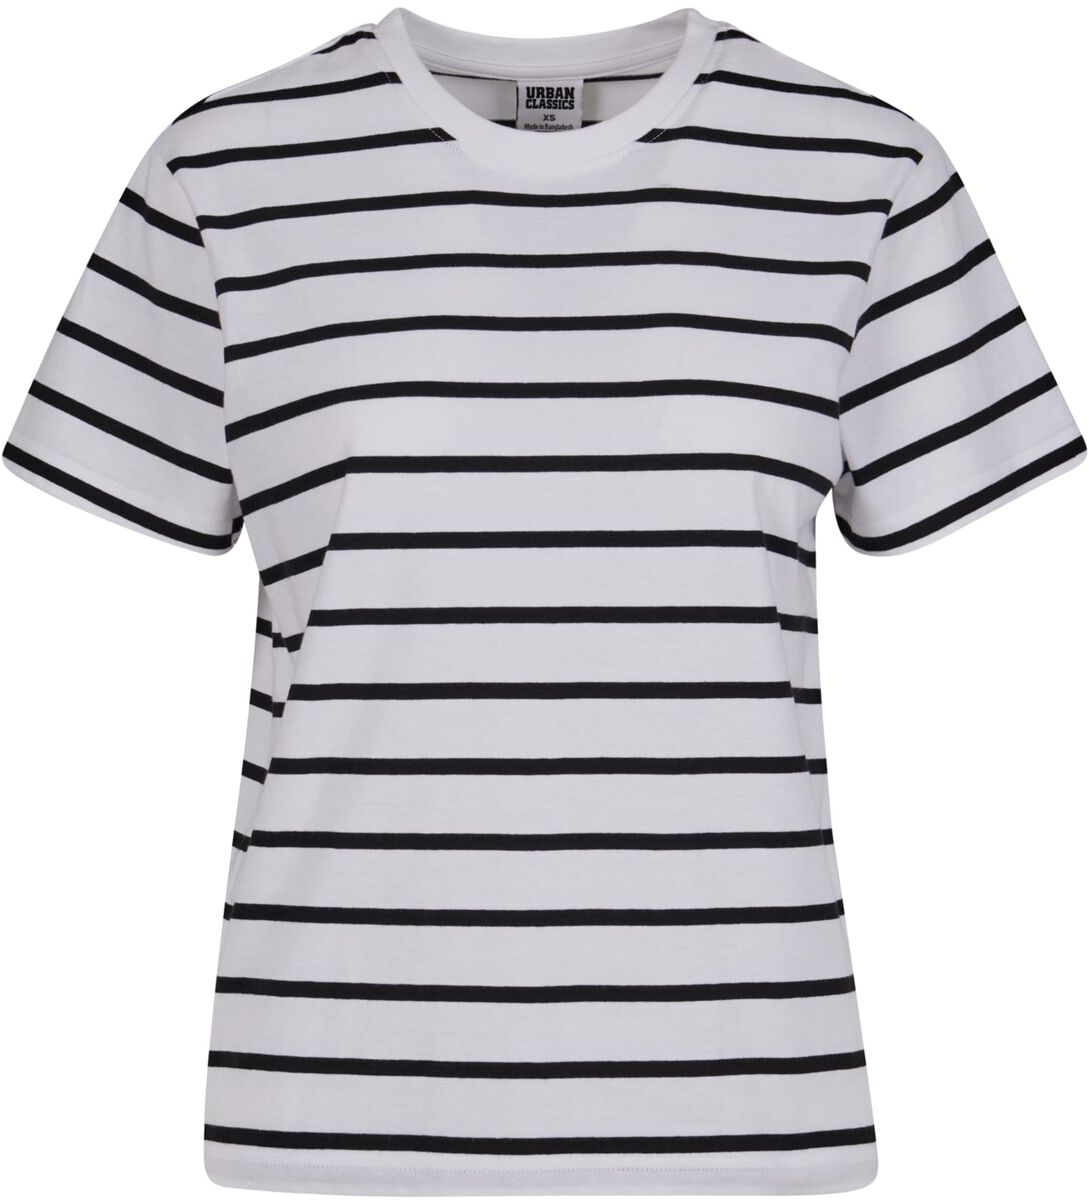 Urban Classics T-Shirt - Ladies Striped Boxy Tee - XS bis 3XL - für Damen - Größe XL - schwarz/weiß